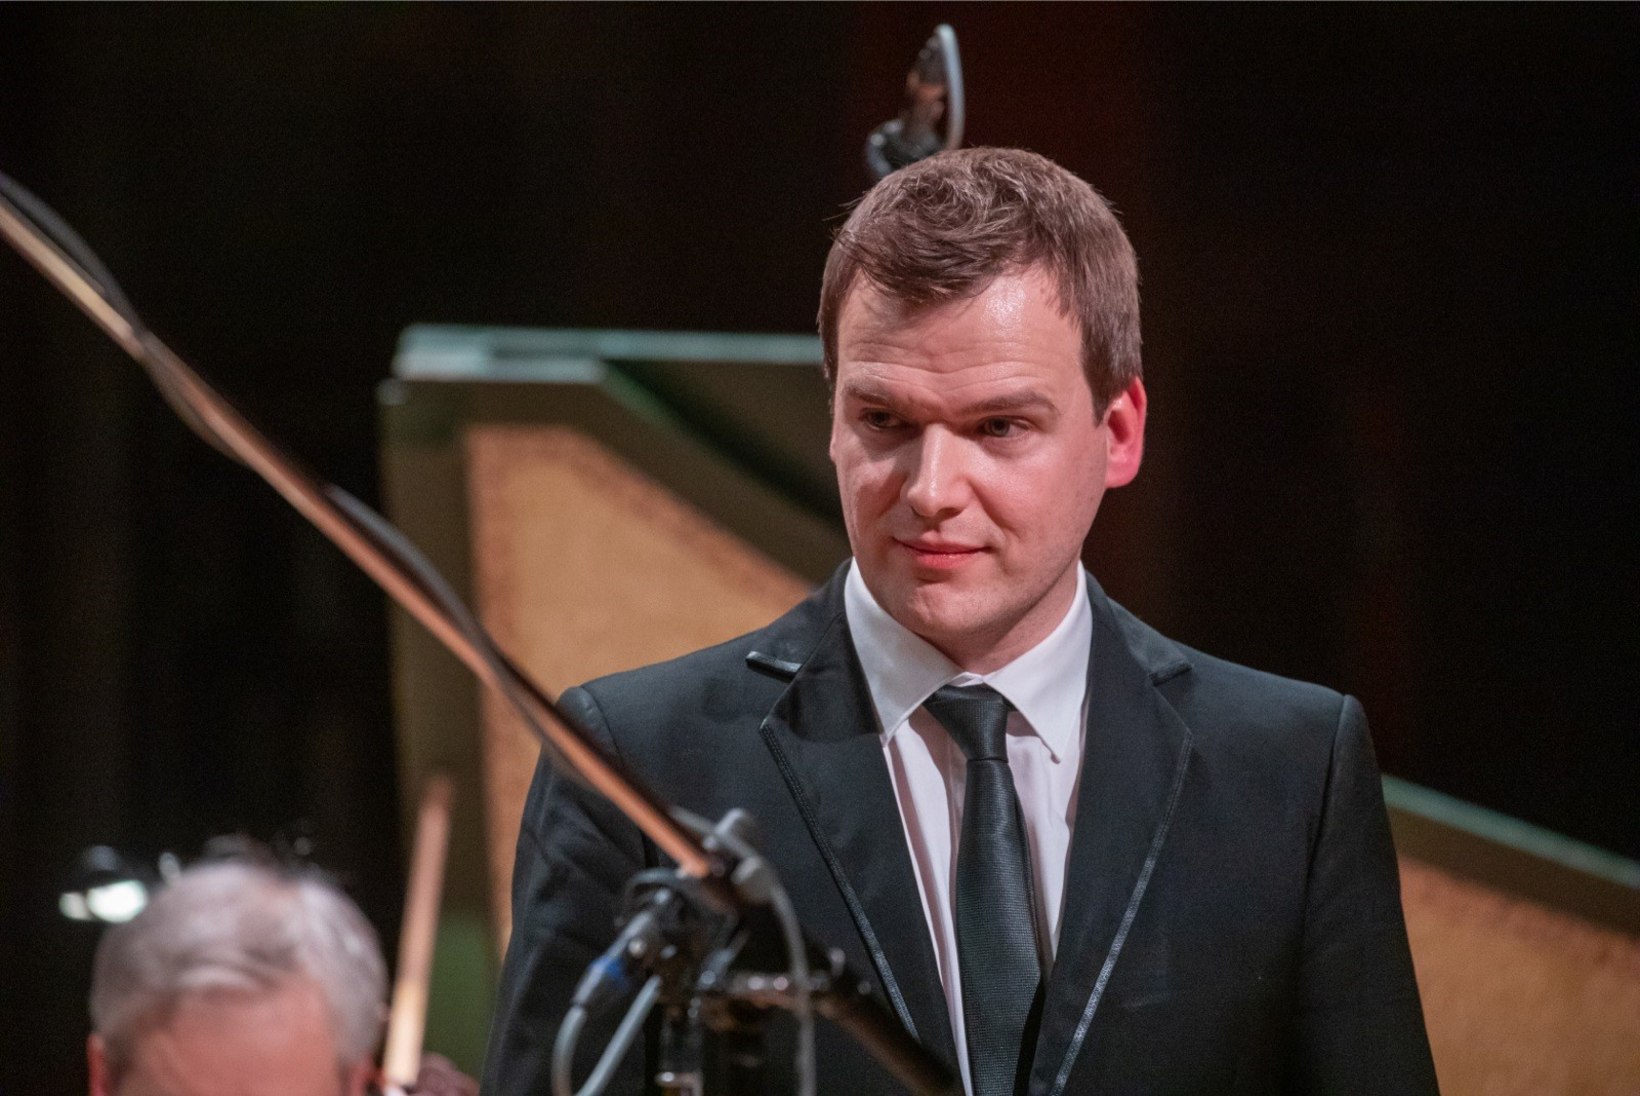 Palju õnne! Aasta muusikuks valitud dirigent Risto Joost valmistub isarolliks